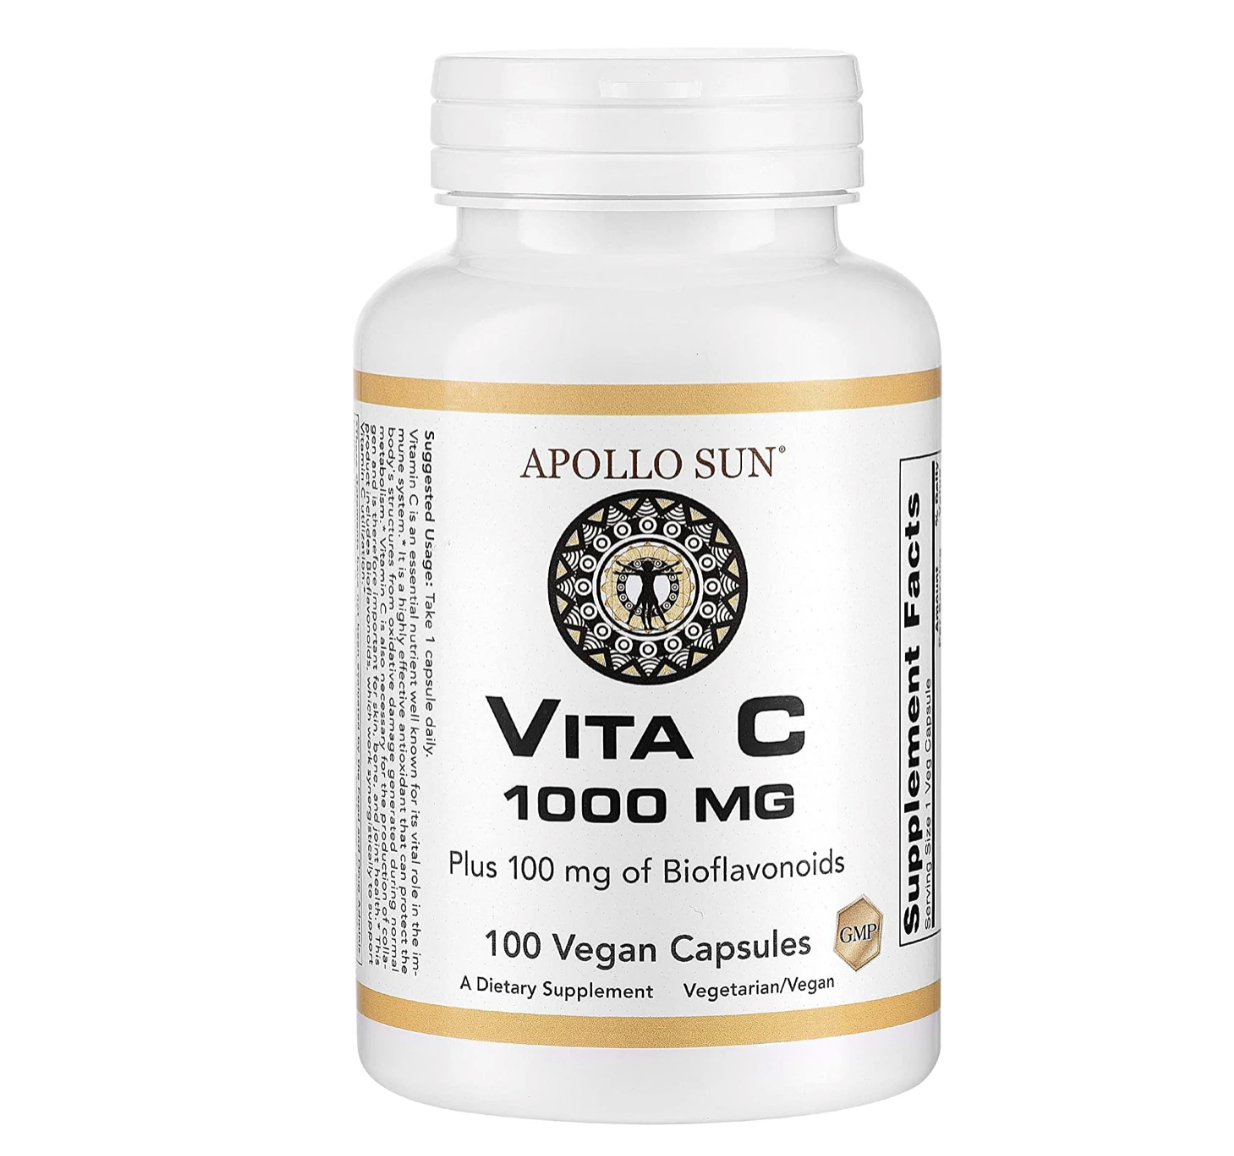 vitamin-c with cash back rebate